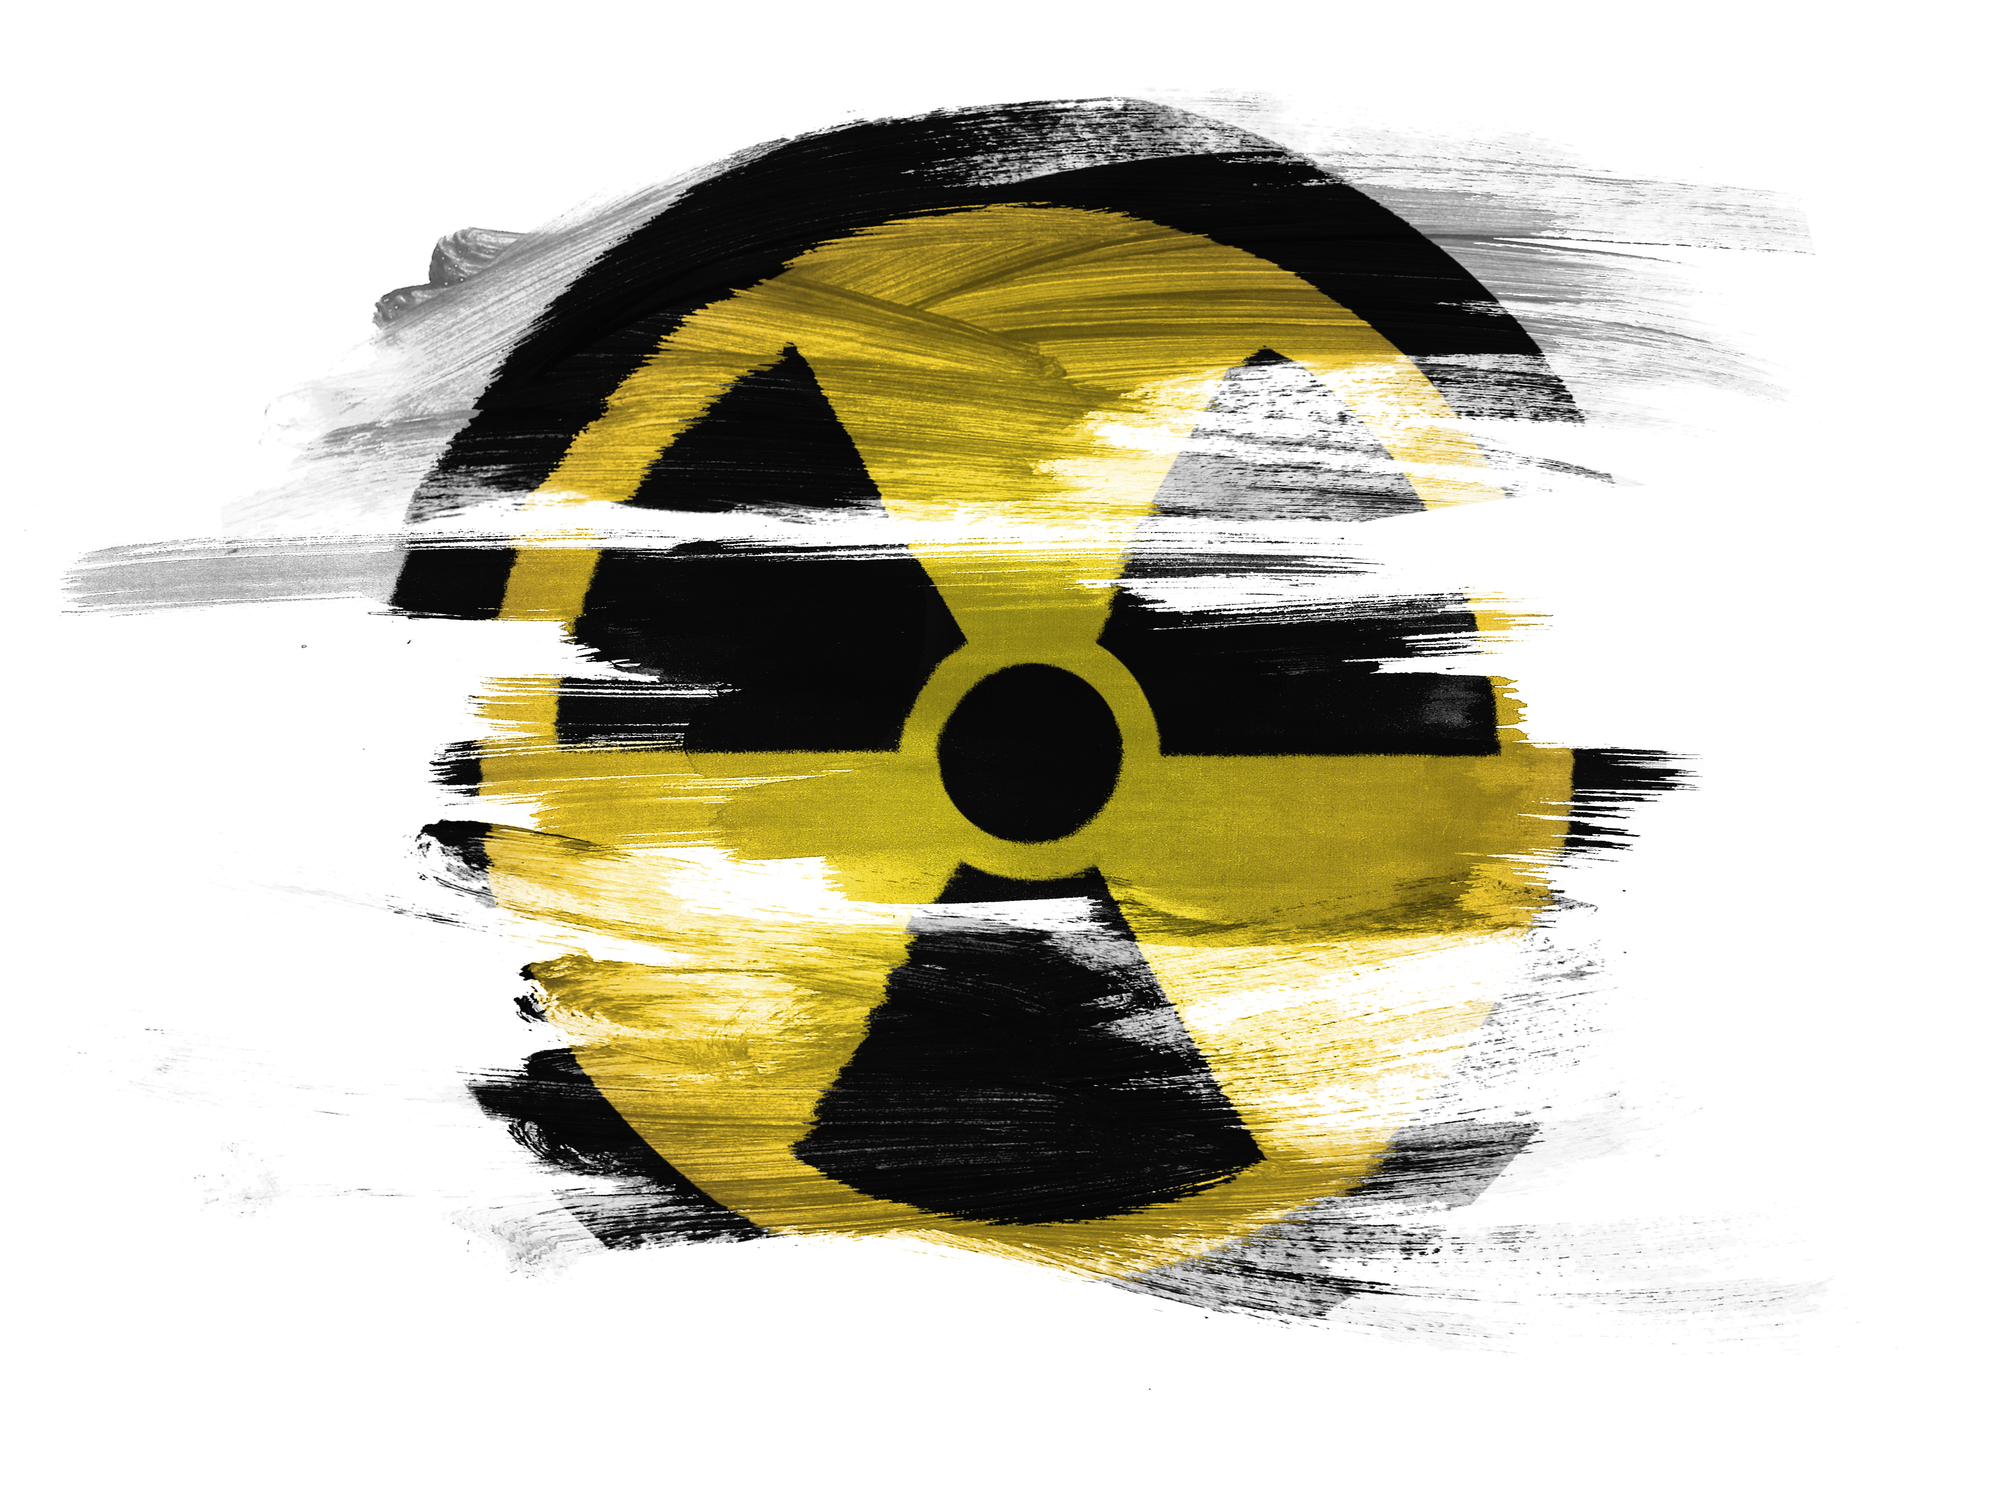 Piccoli reattori modulari: stessi problemi del “vecchio” nucleare